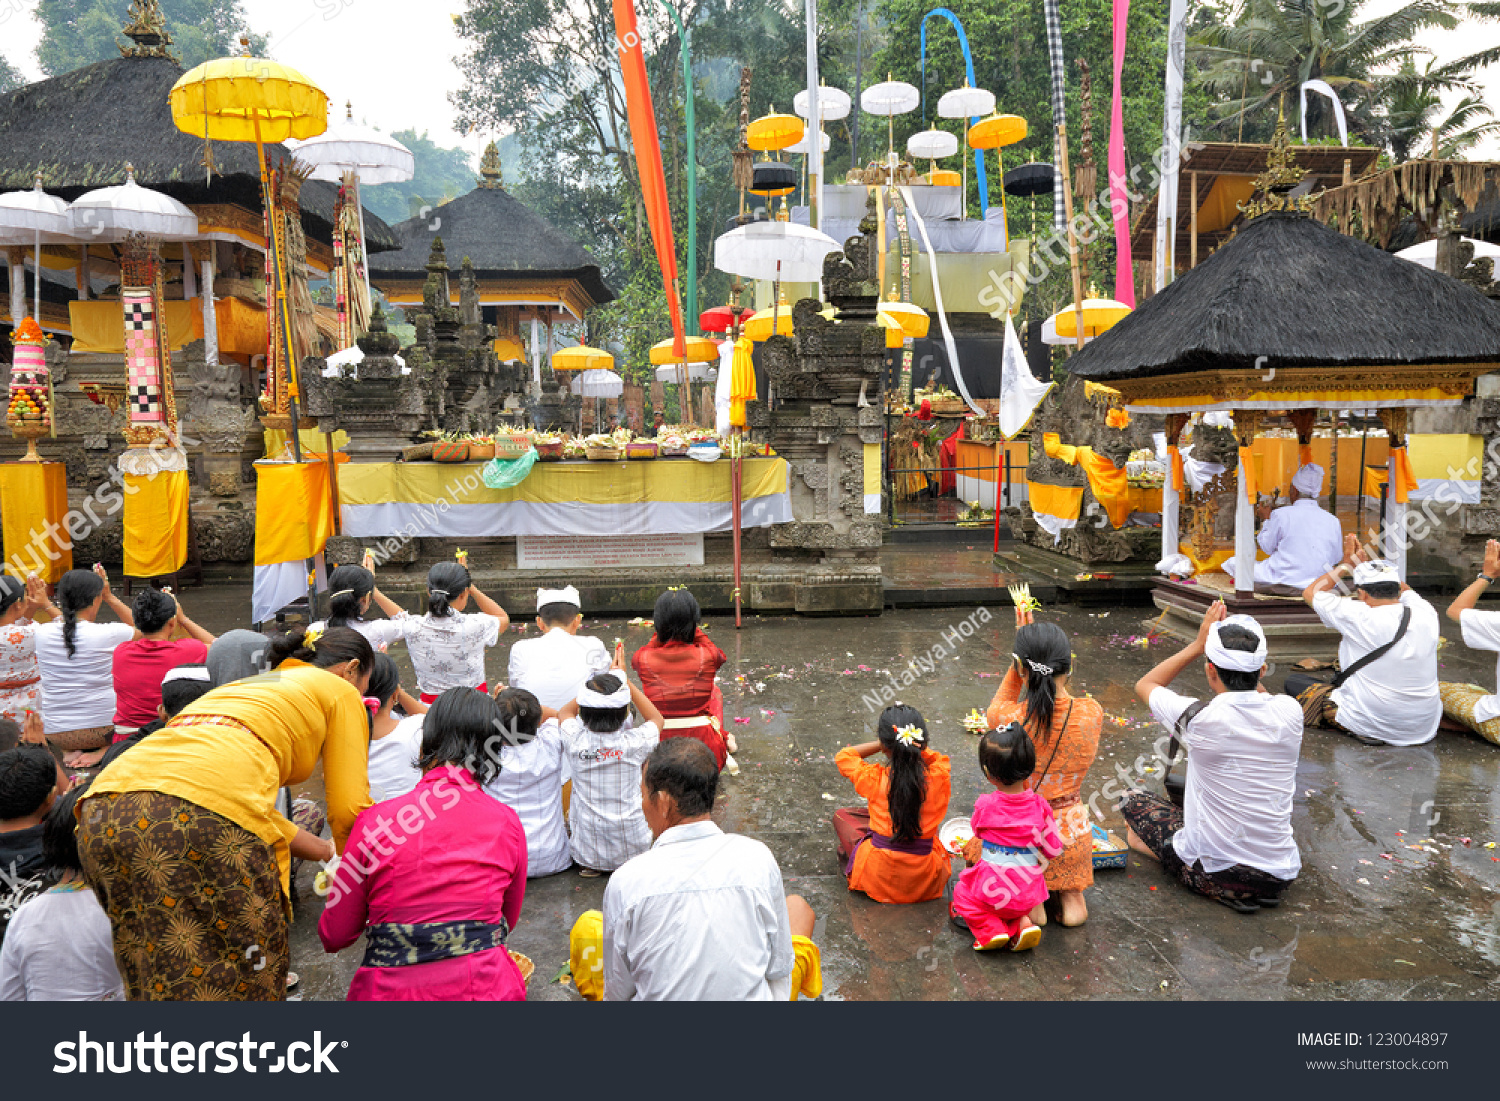 Tampak Siring, Bali, Indonesia - October 30: People Praying At Holy